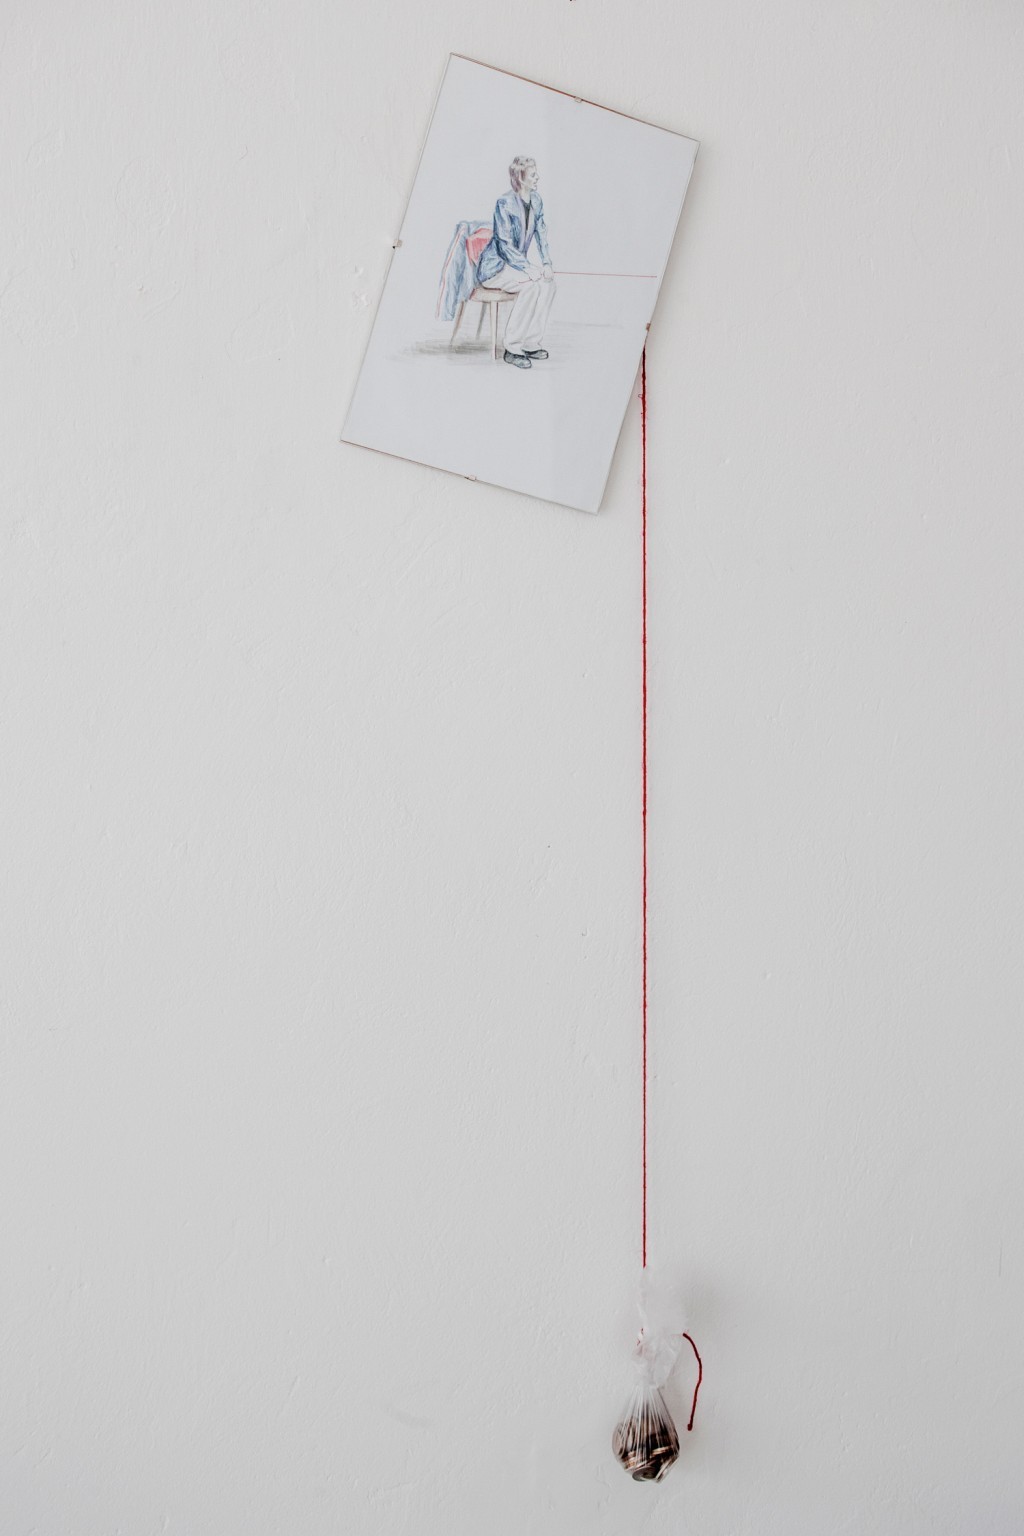 Oskar Dawicki, "Ćwiczenie z równowagi", 2012, dzięki uprzejmości Gdańskiej Galerii Miejskiej